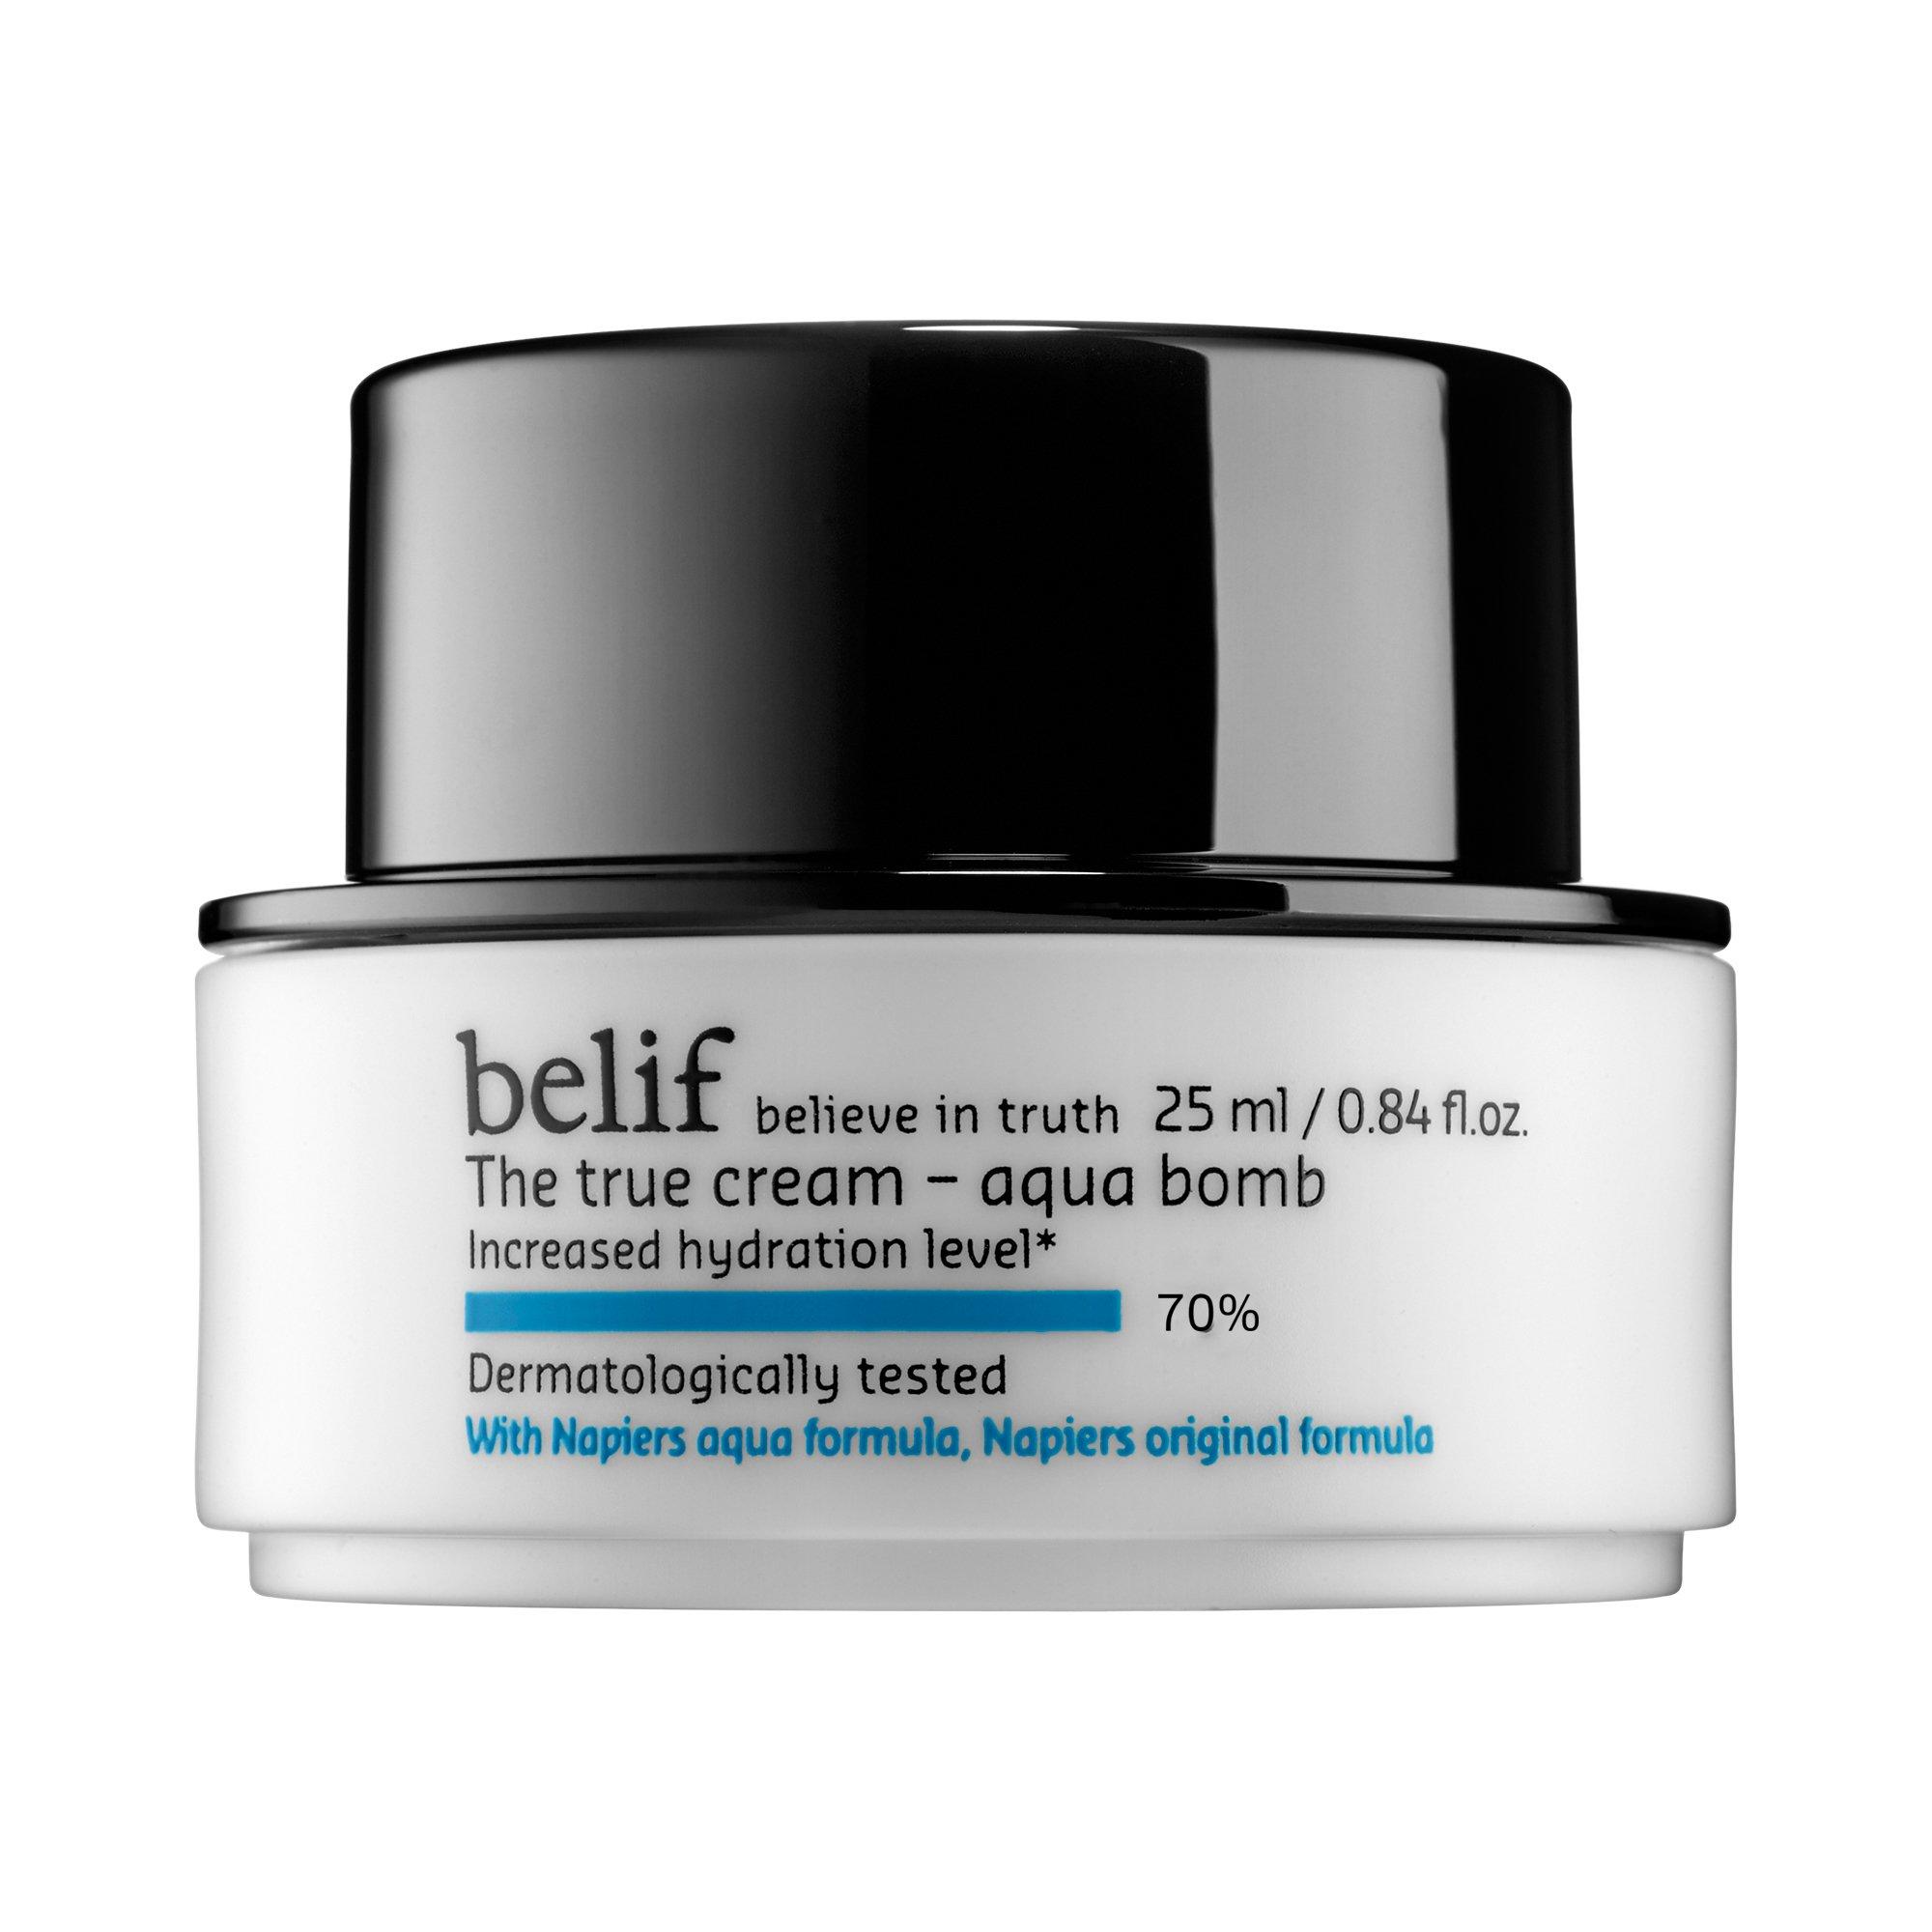 Belif The True Cream Aqua Bomb Travel